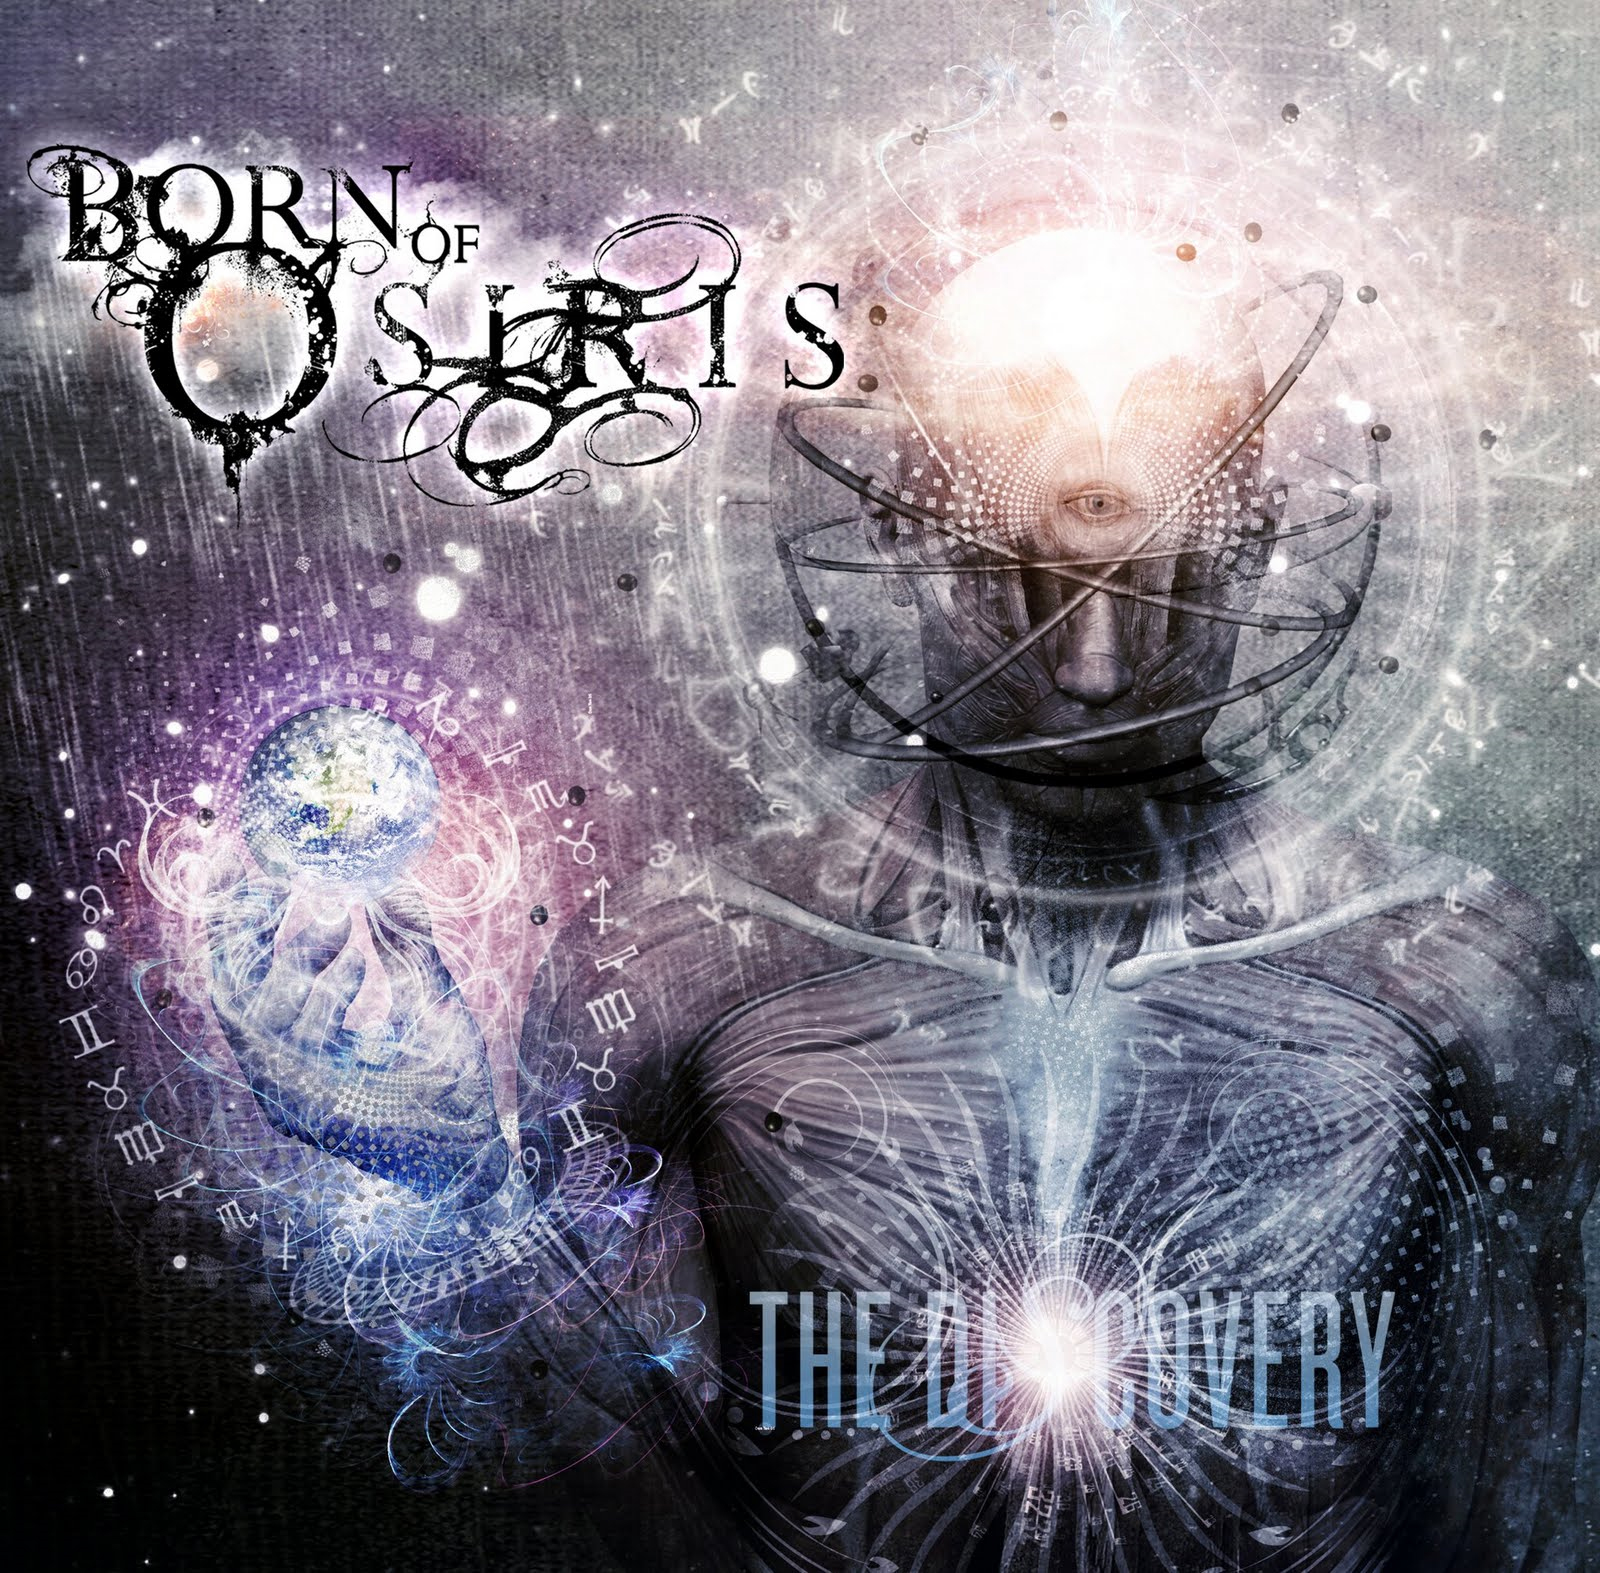 Born of Osiris - The Omniscient - Tekst piosenki, lyrics - teksciki.pl